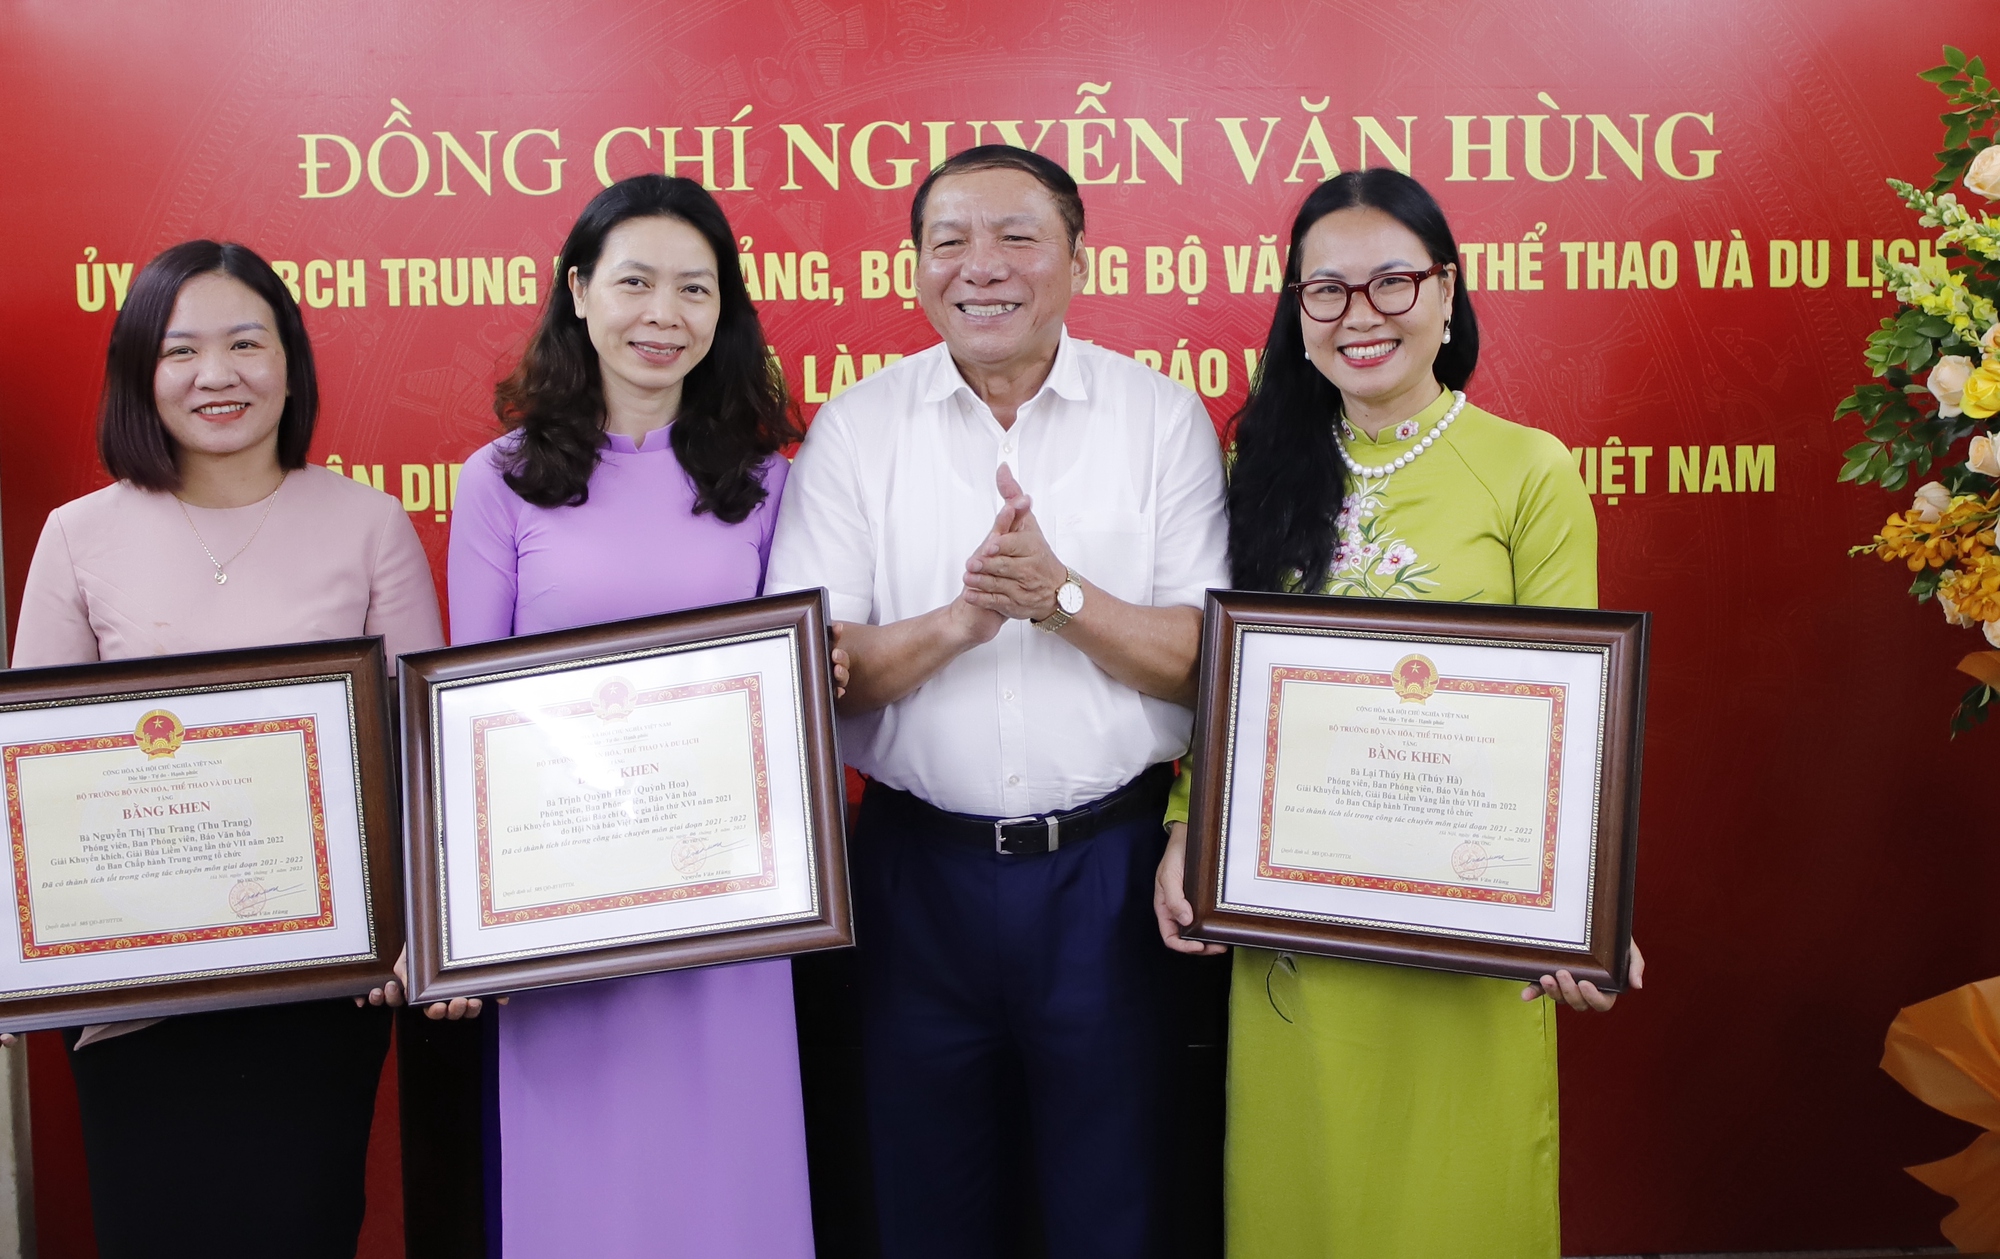 Bộ trưởng Nguyễn Văn Hùng: Báo chí phải đi trước, mở đường, tạo dư luận đồng thuận trong truyền thông chính sách - Ảnh 6.